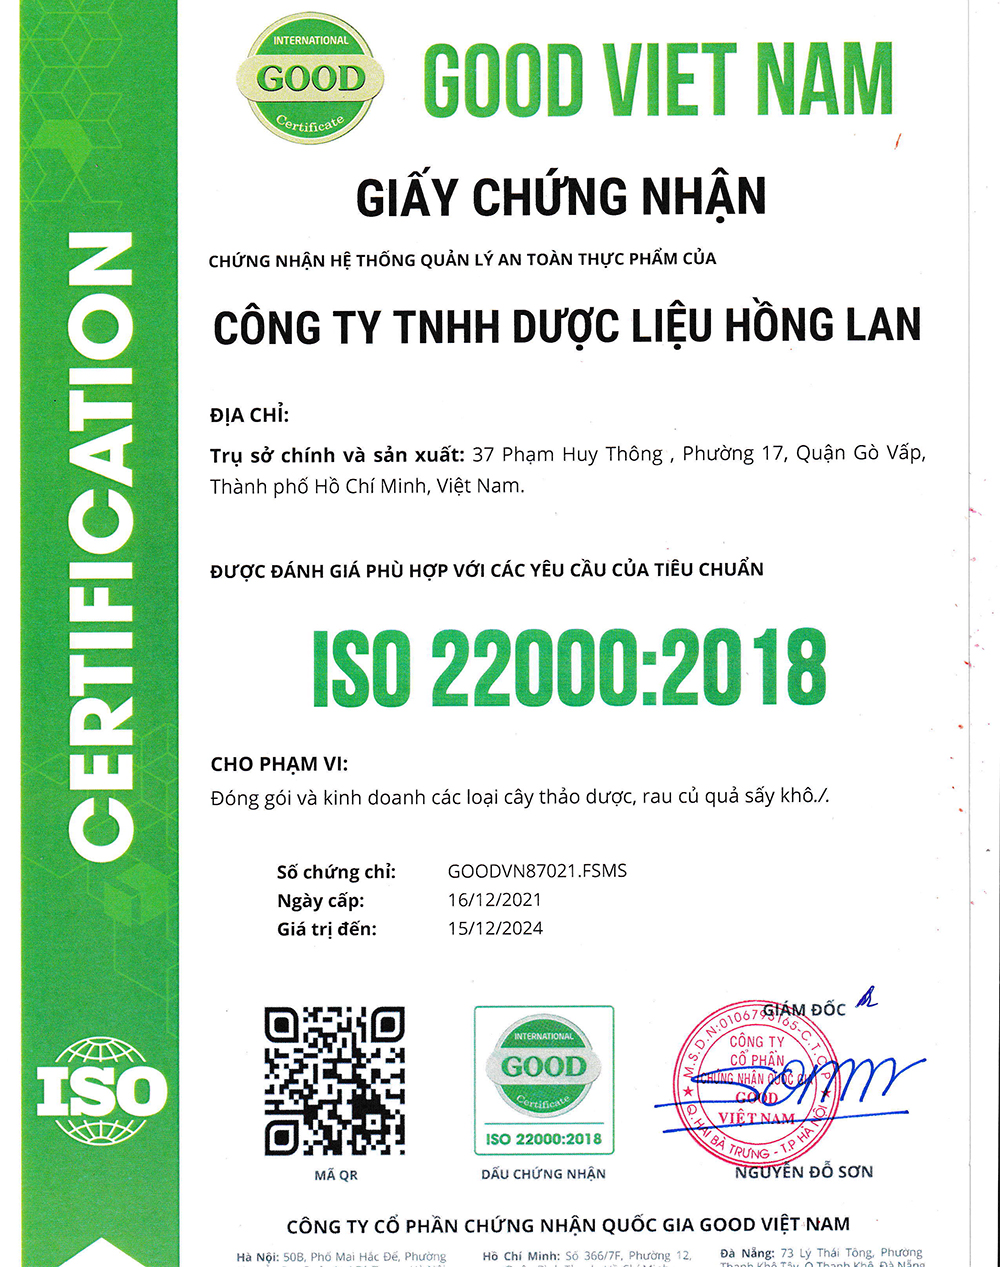 Trà túi lọc Cây Xuyên Tâm Liên được sản xuất bởi Công ty TNHH Dược Liệu Hồng Lan theo hệ thống quản lý an toàn thực phẩm ISO 22000:2018 được cấp bởi công ty cổ phần chứng nhận Quốc Gia Good Việt Nam (Good Viet Nam Certification Joint Stock Company)